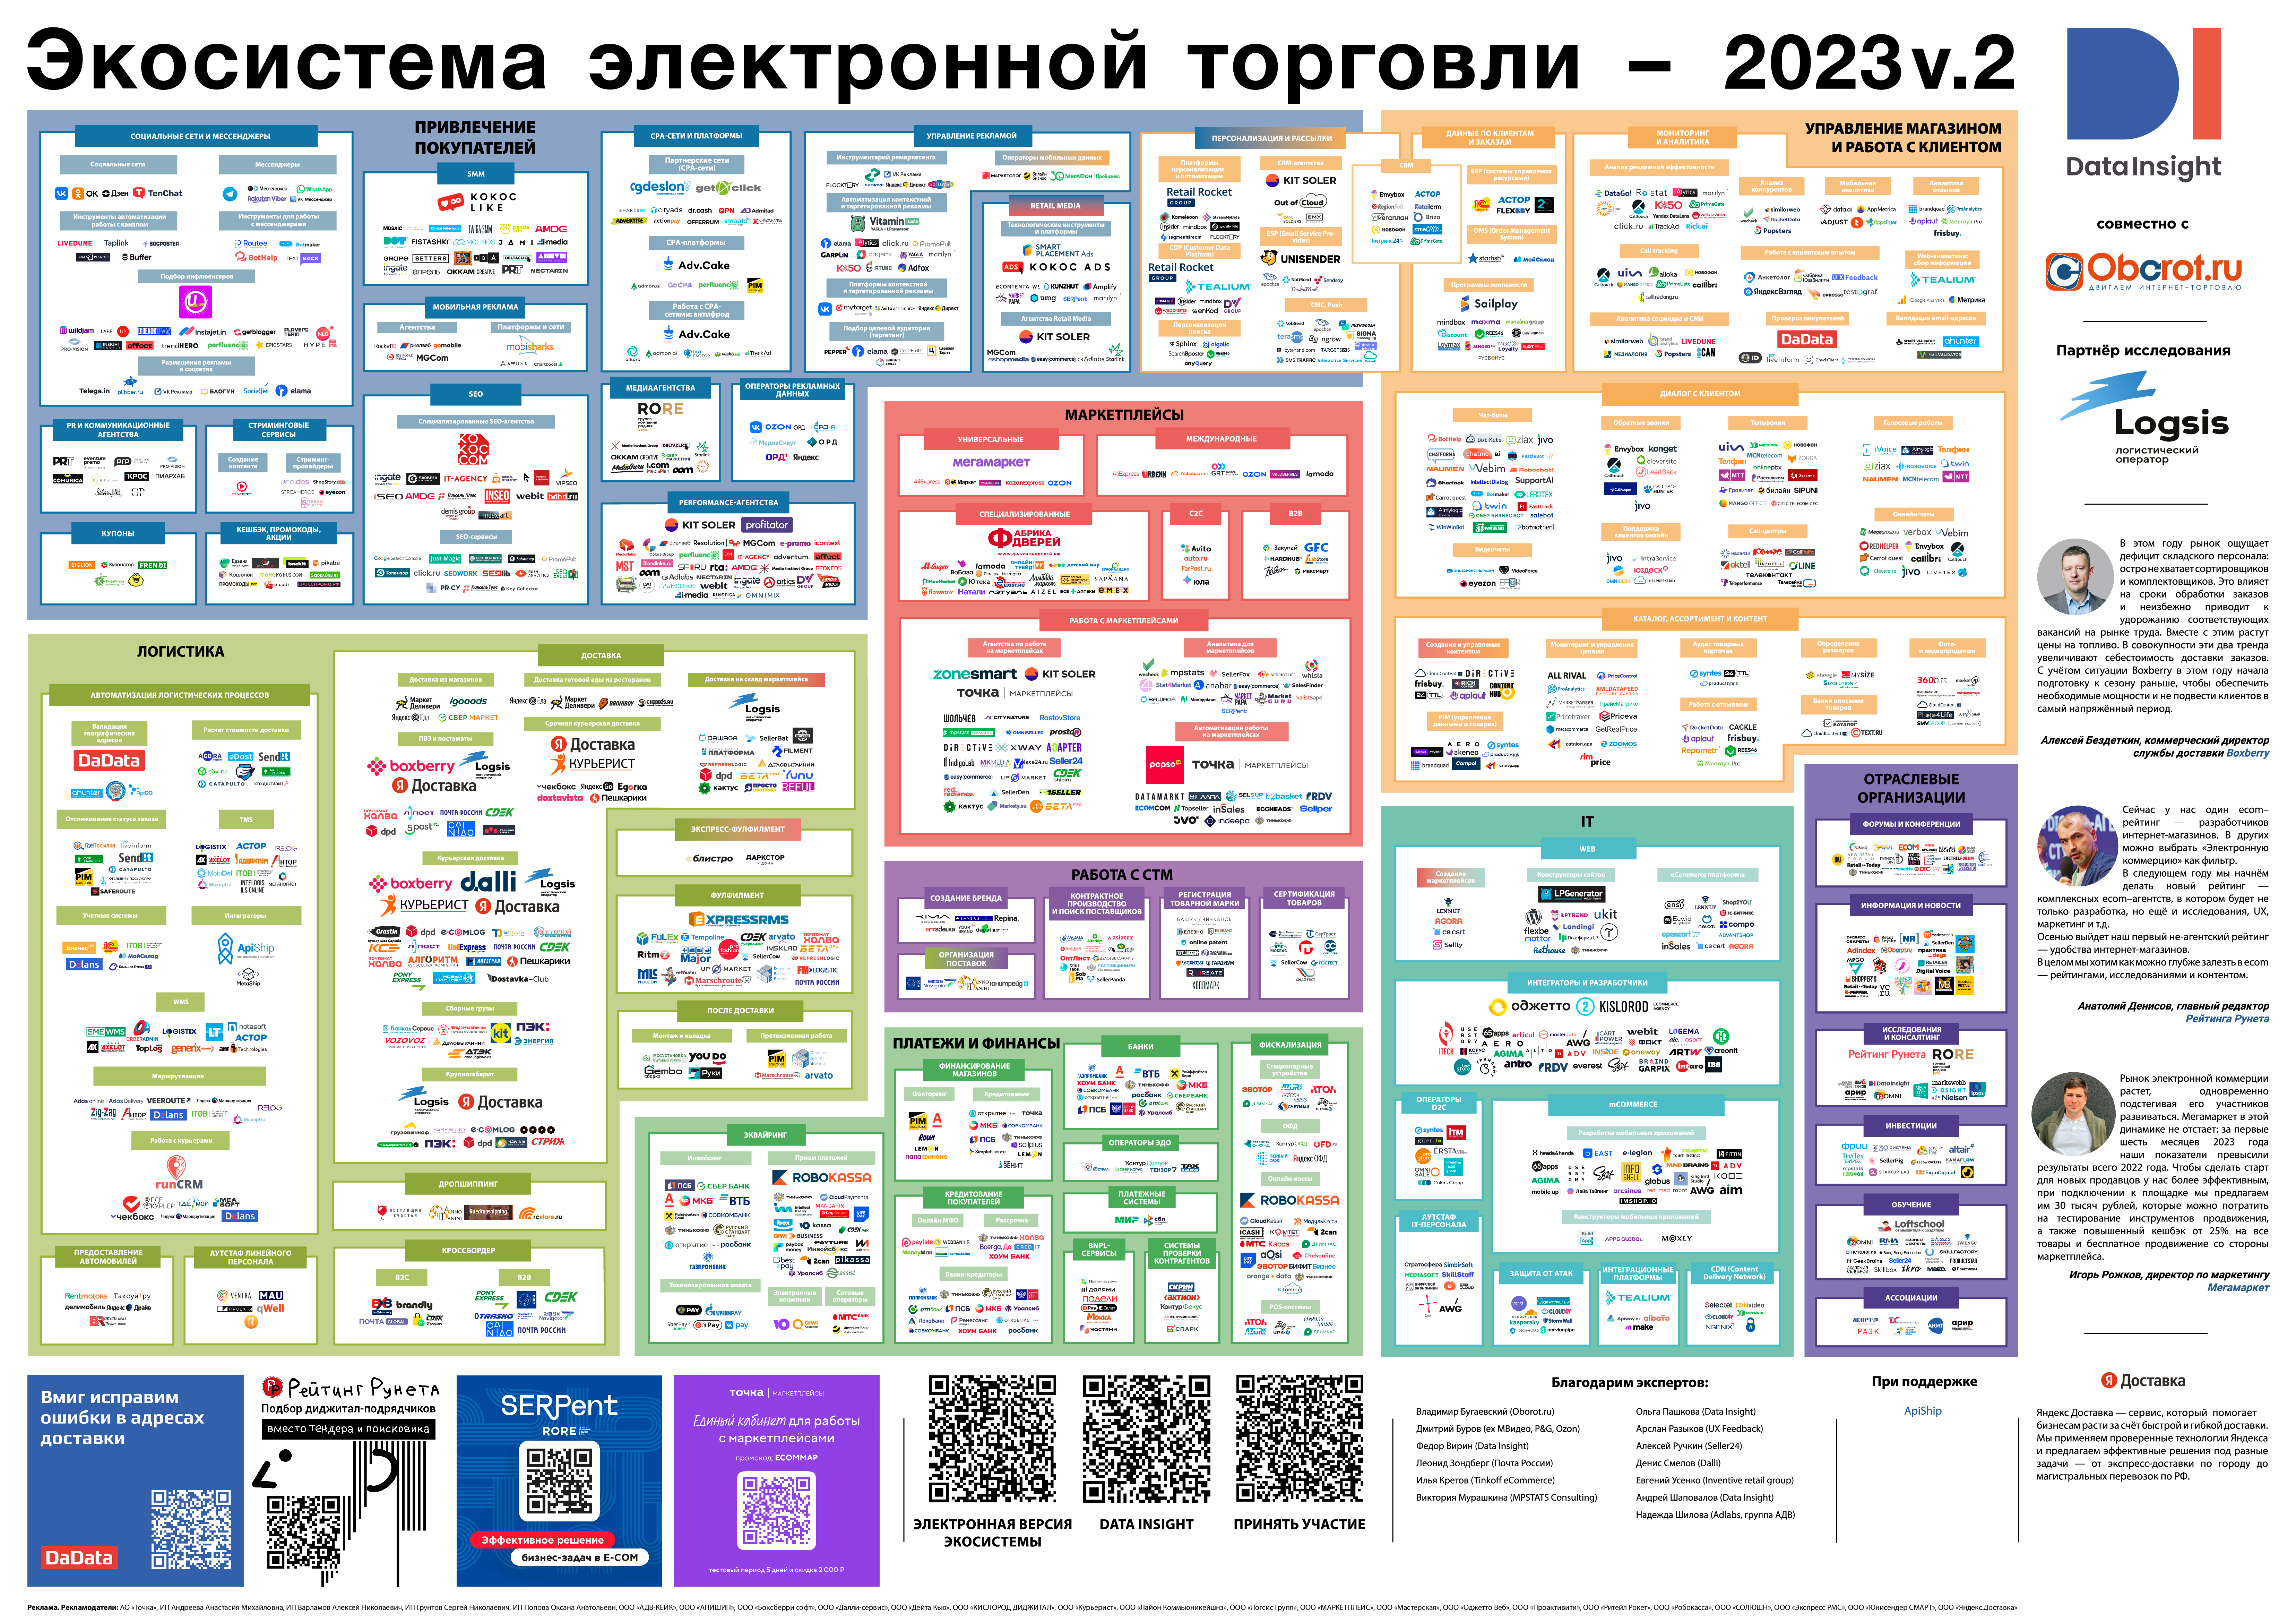 Экосистема электронной торговли 2023 Data Insight, версия v.2